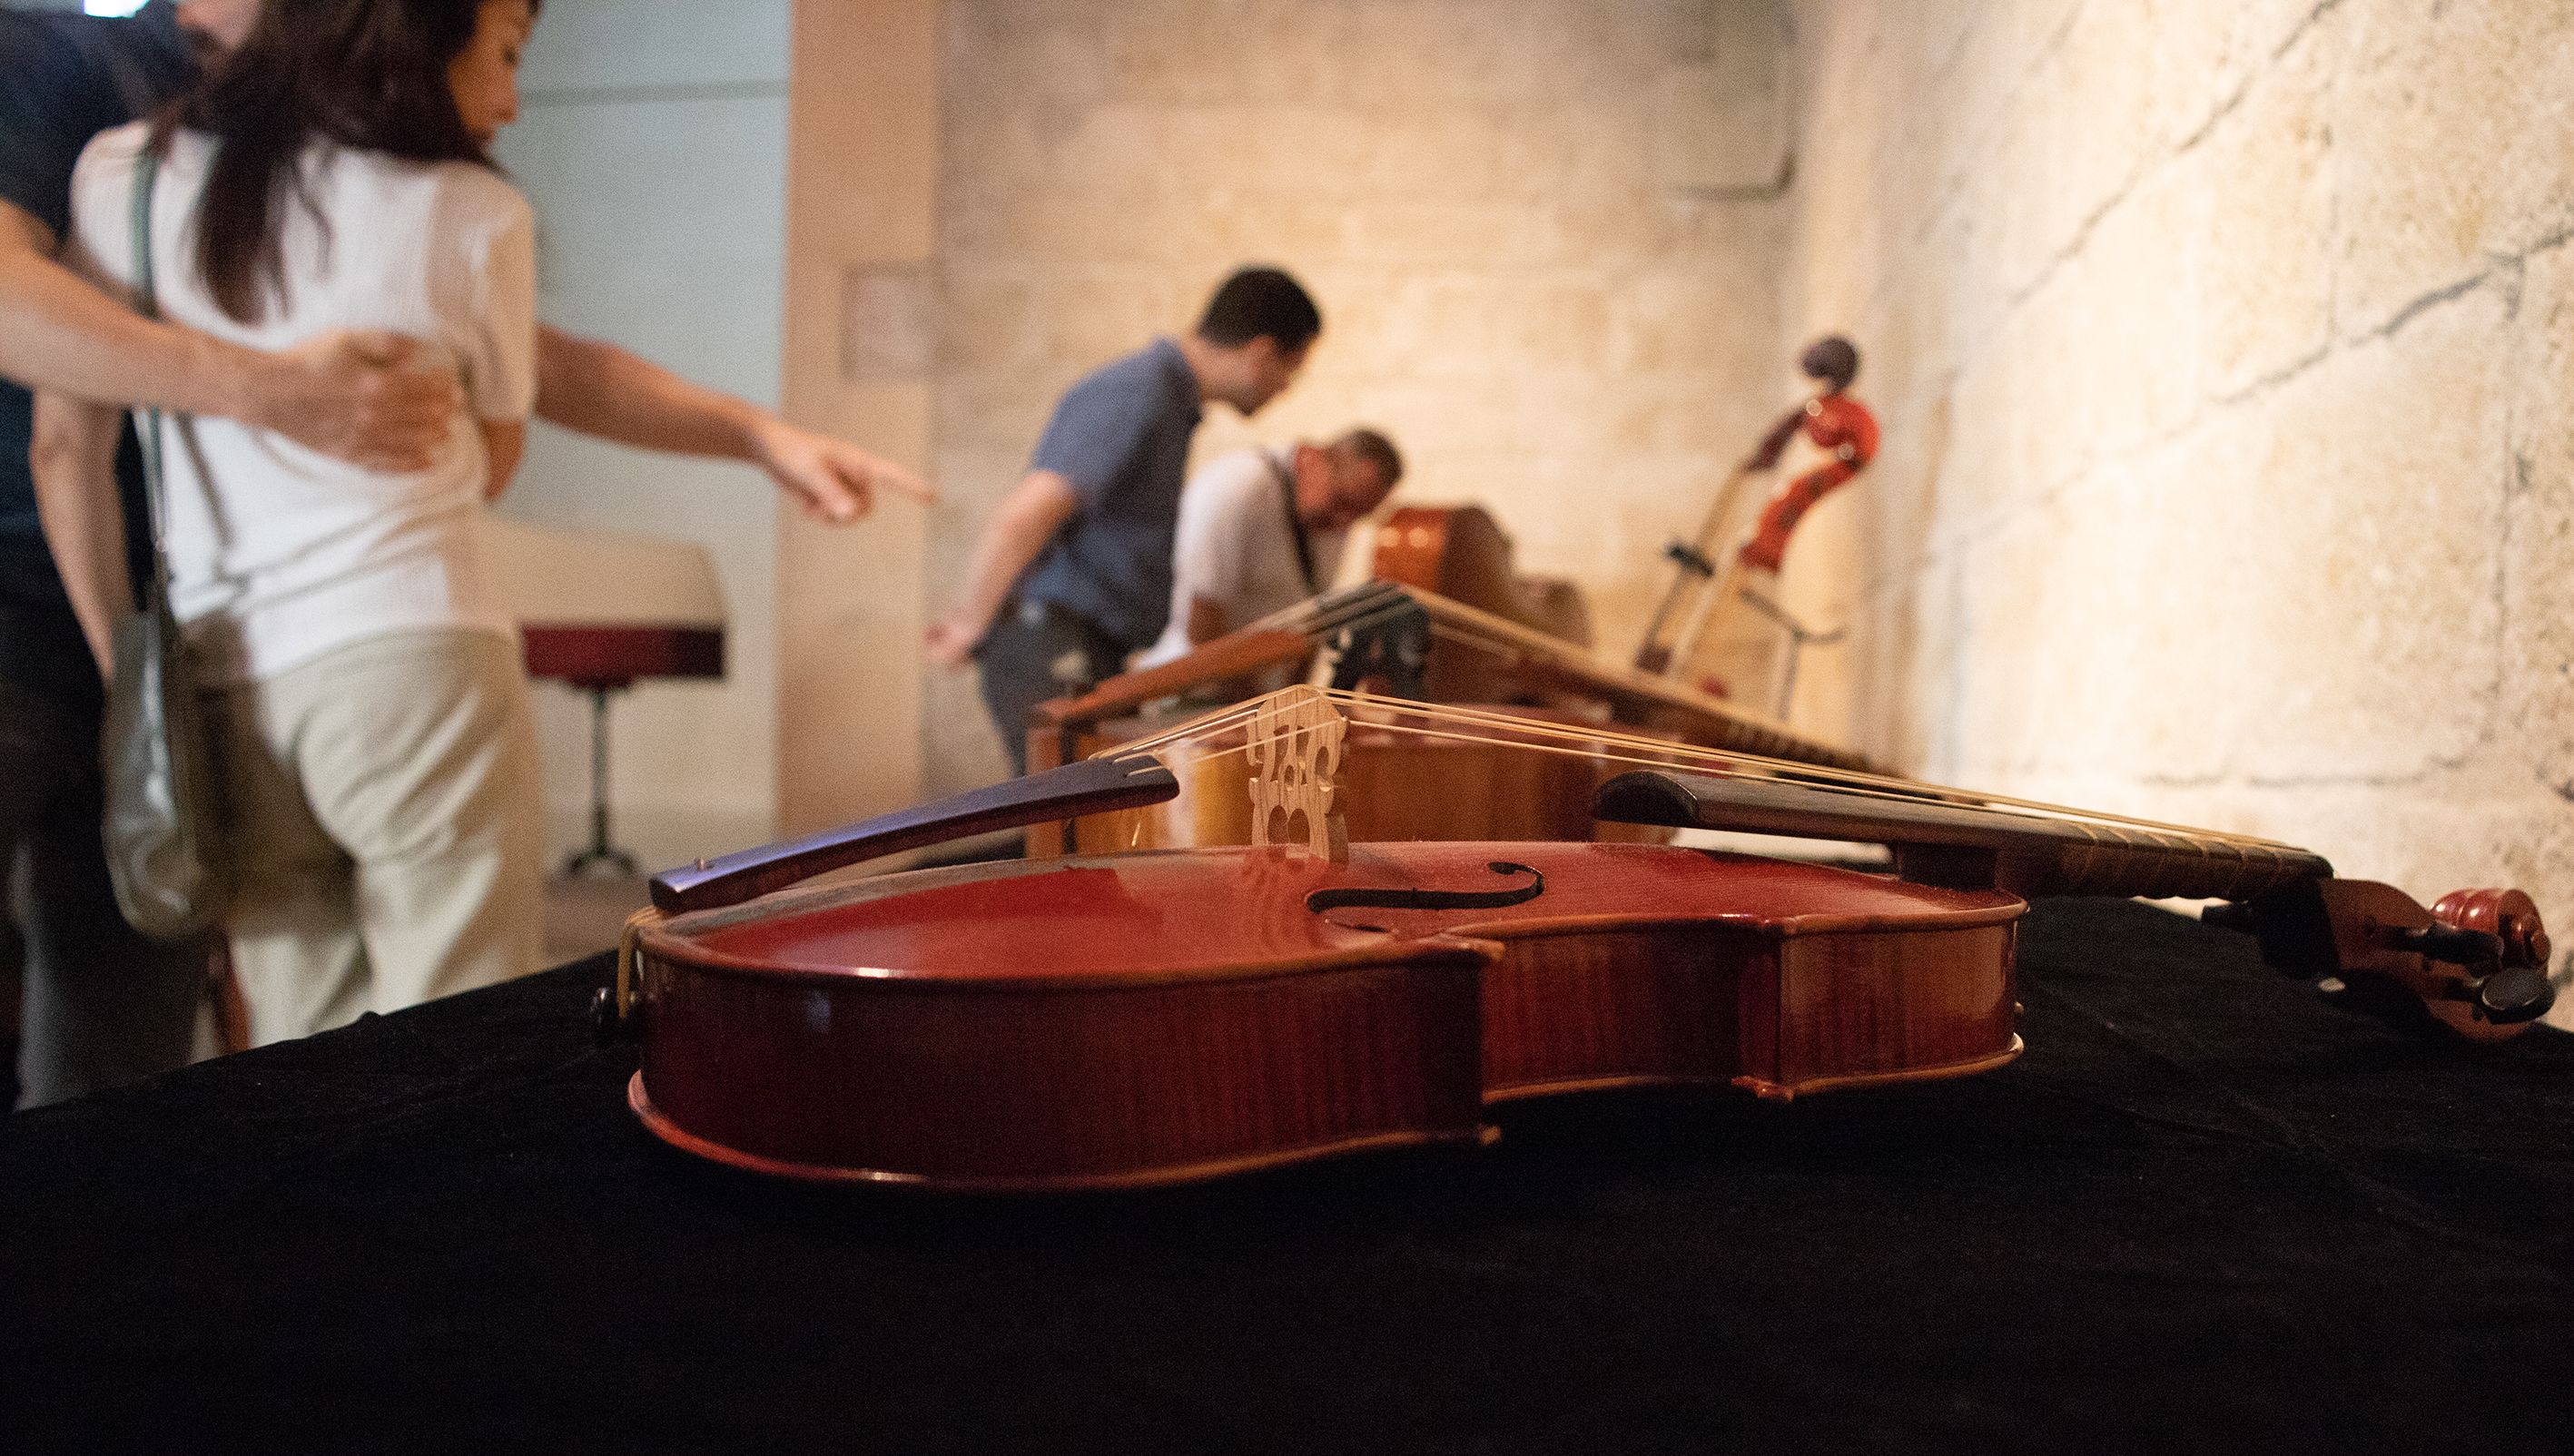 1es Jornades de música antiga Contratemps: Mostra d'instruments barrocs. Foto: Adrián Gómez.